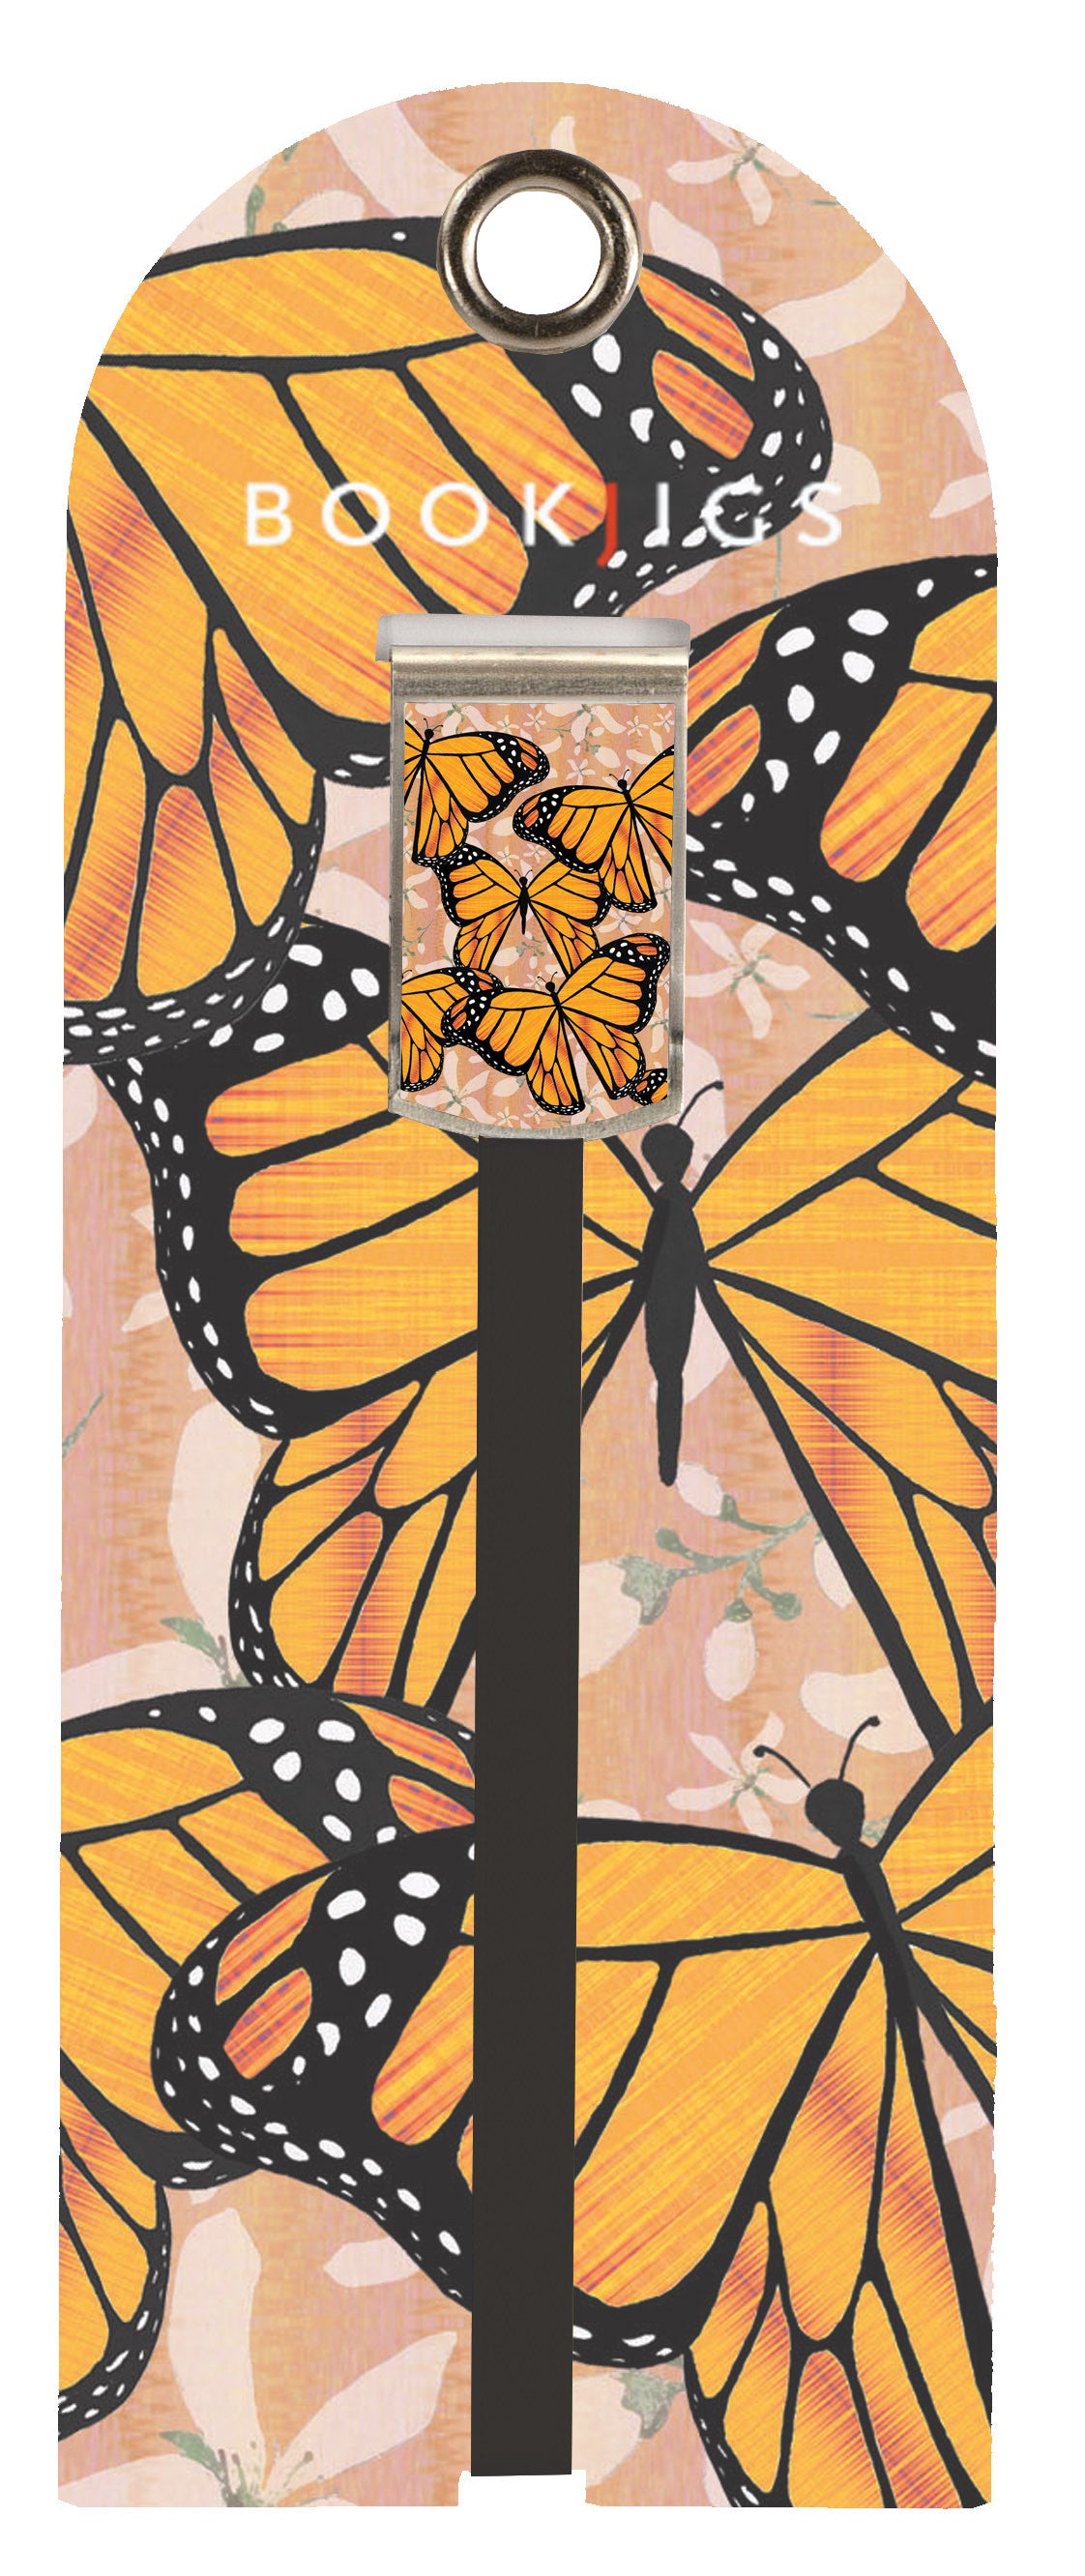 SKU : 1409 - Monarch Butterfly - Bookjig